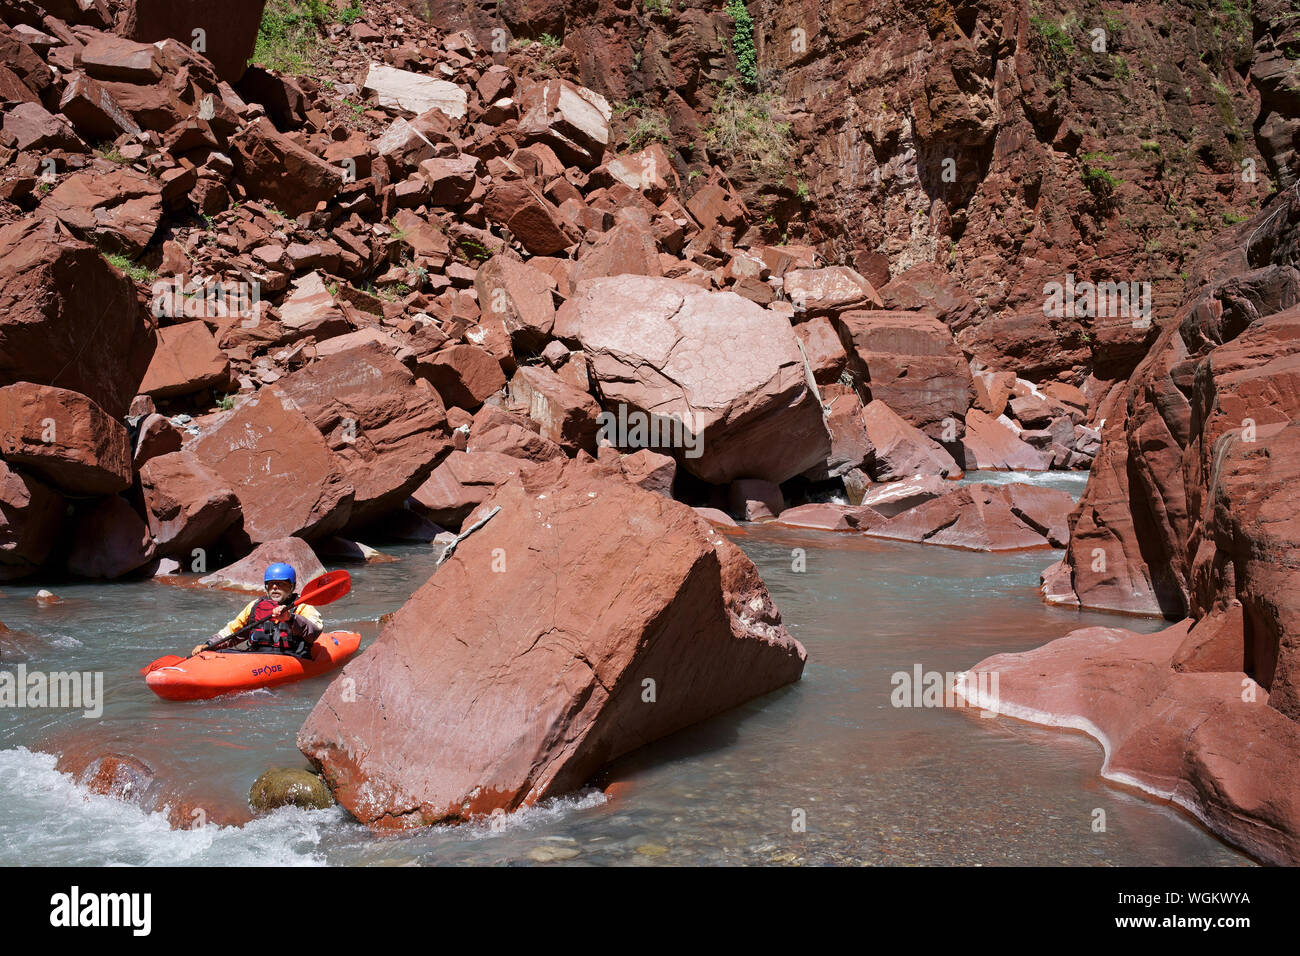 Homme d'âge moyen faisant du kayak entre de grands rochers rouges sur la rivière Var.Guillaumes, gorge de Daluis, Alpes-Maritimes, France. Banque D'Images